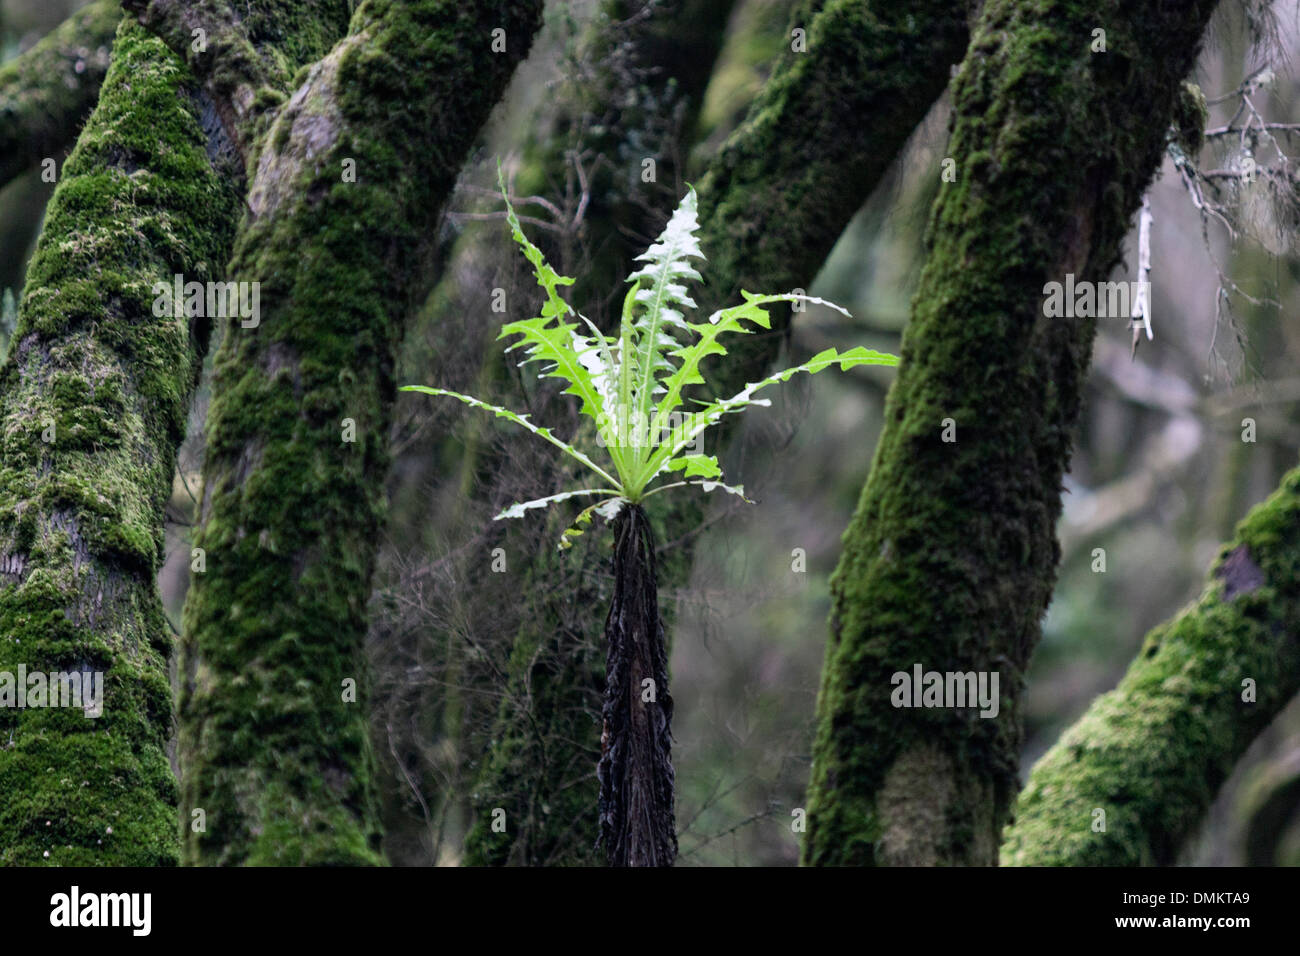 Parc National de Garajonay fournit le meilleur exemple de laurisilva canarienne, une forêt subtropicale humide. Banque D'Images